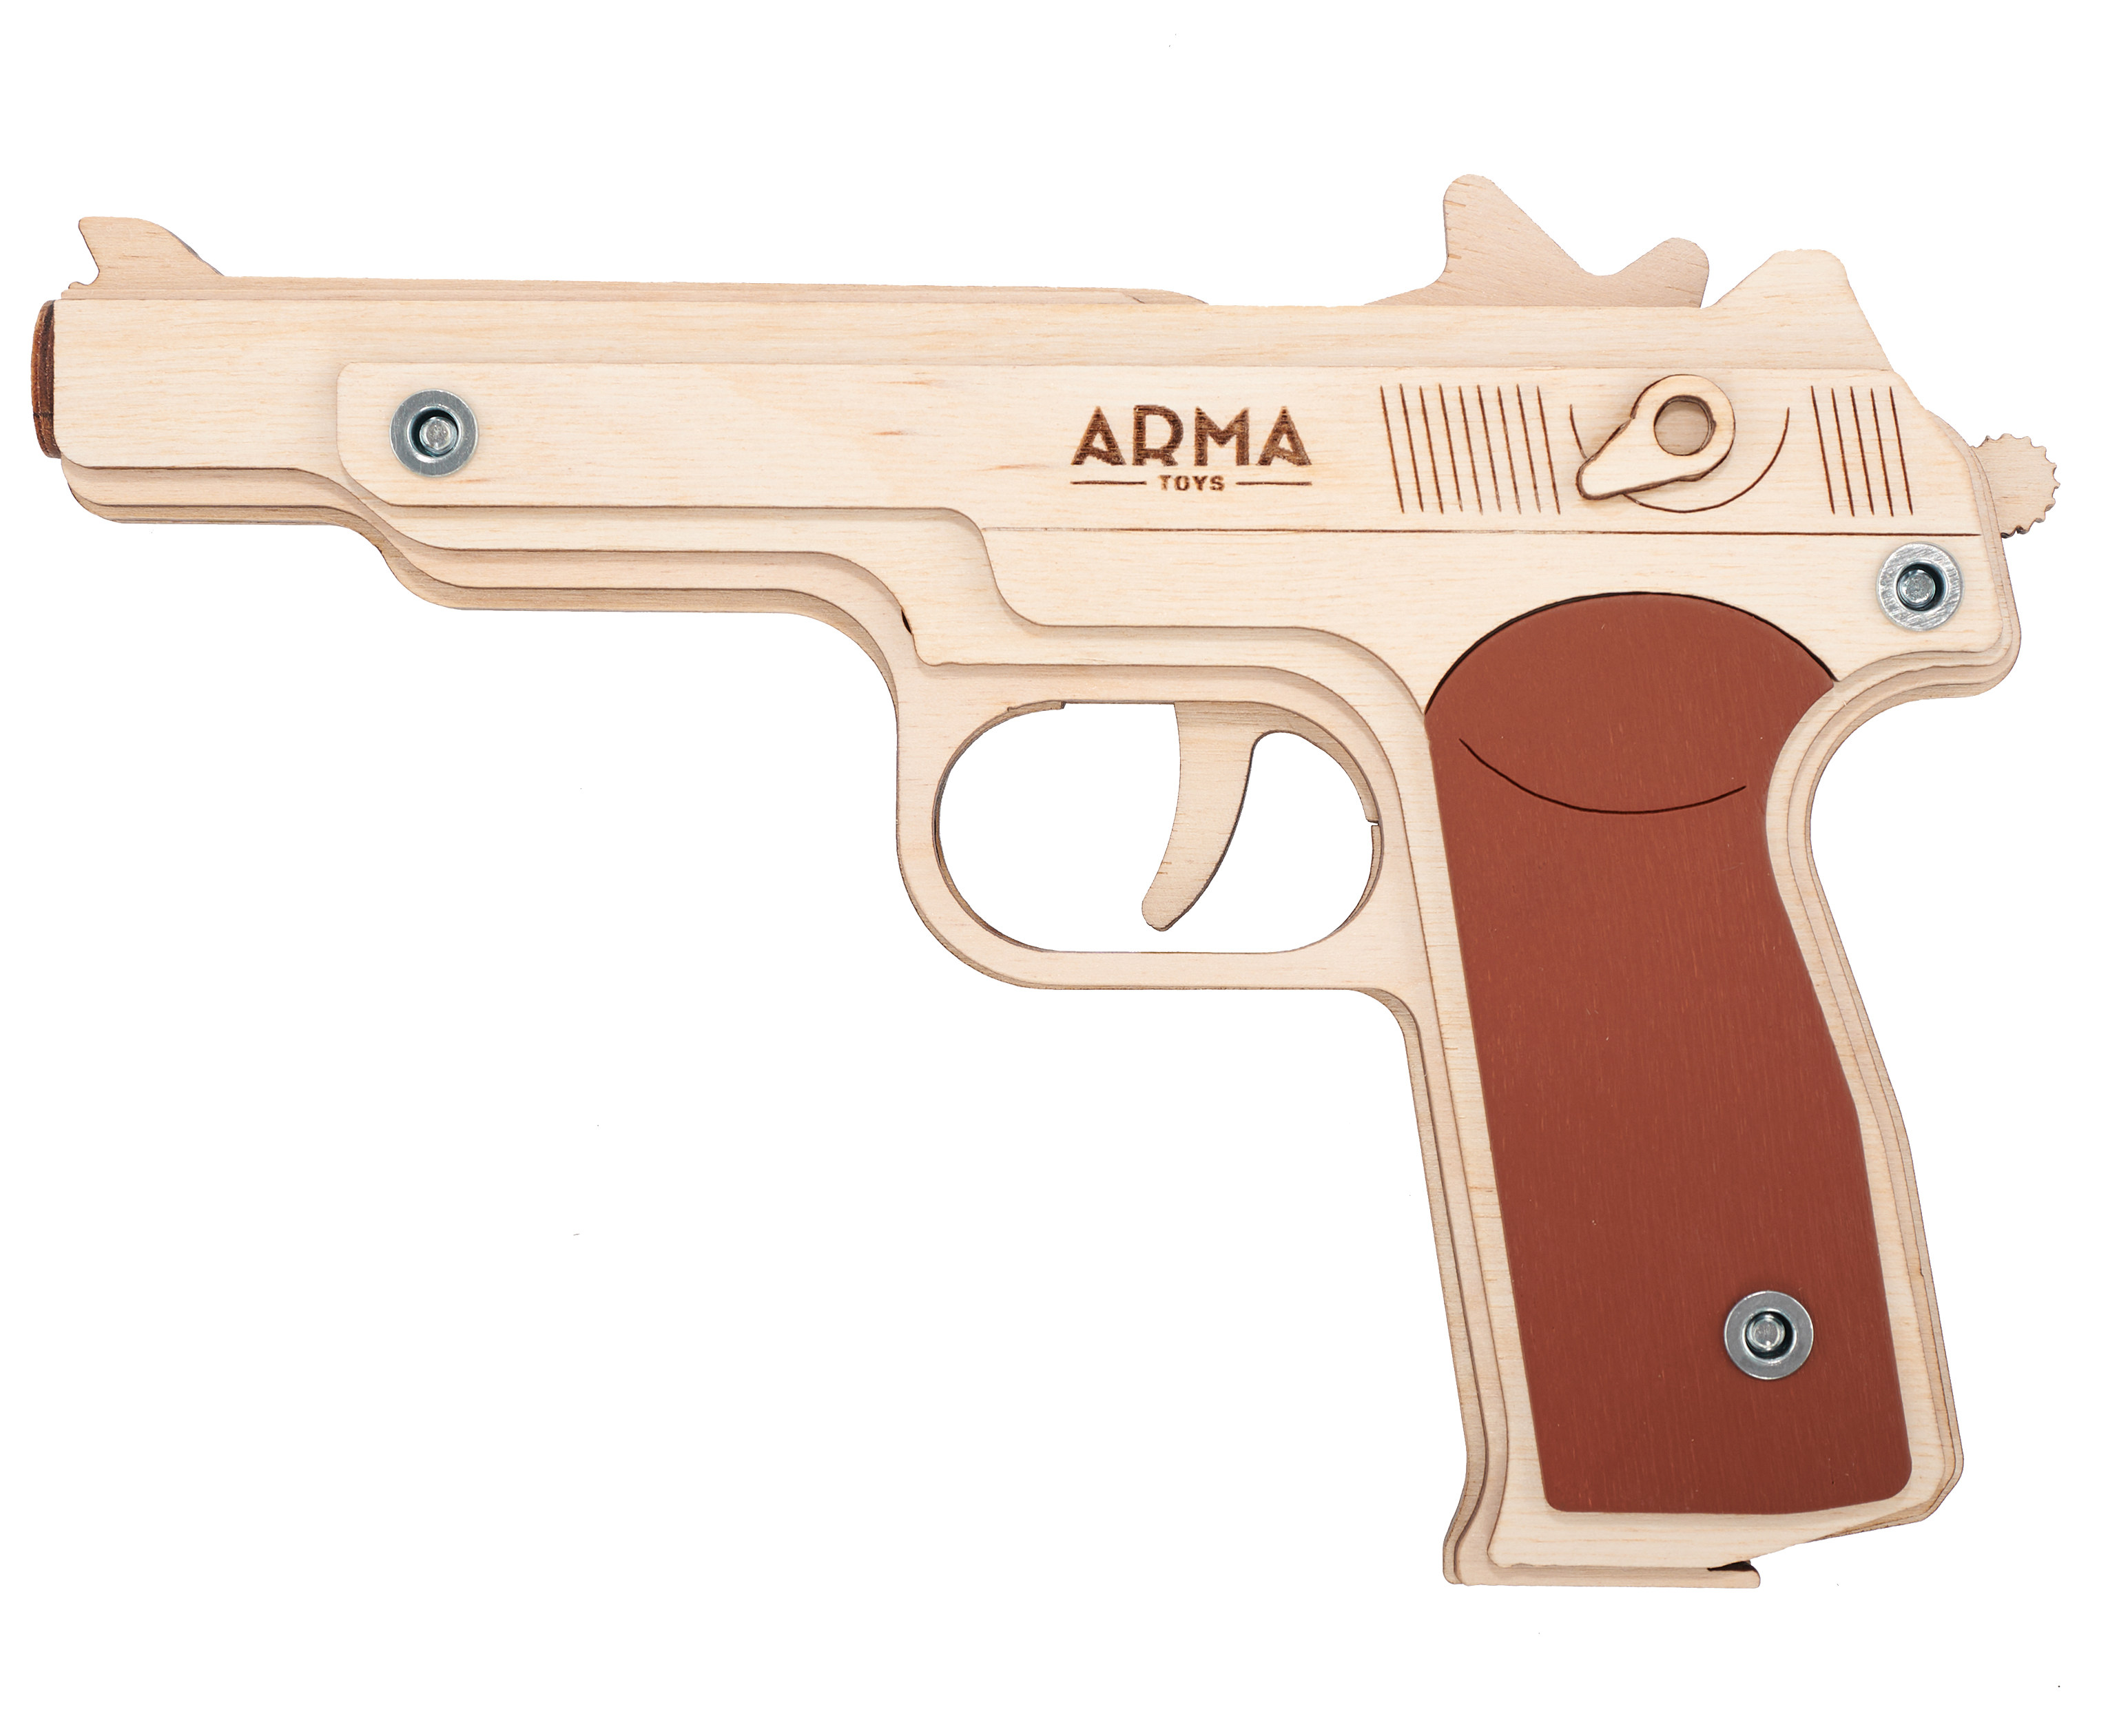 Резинкострел игрушечный Arma toys пистолет АПС макет, Стечкин, АТ009 резинкострел arma toys пистолет desert eagle макет окрашенный at010k